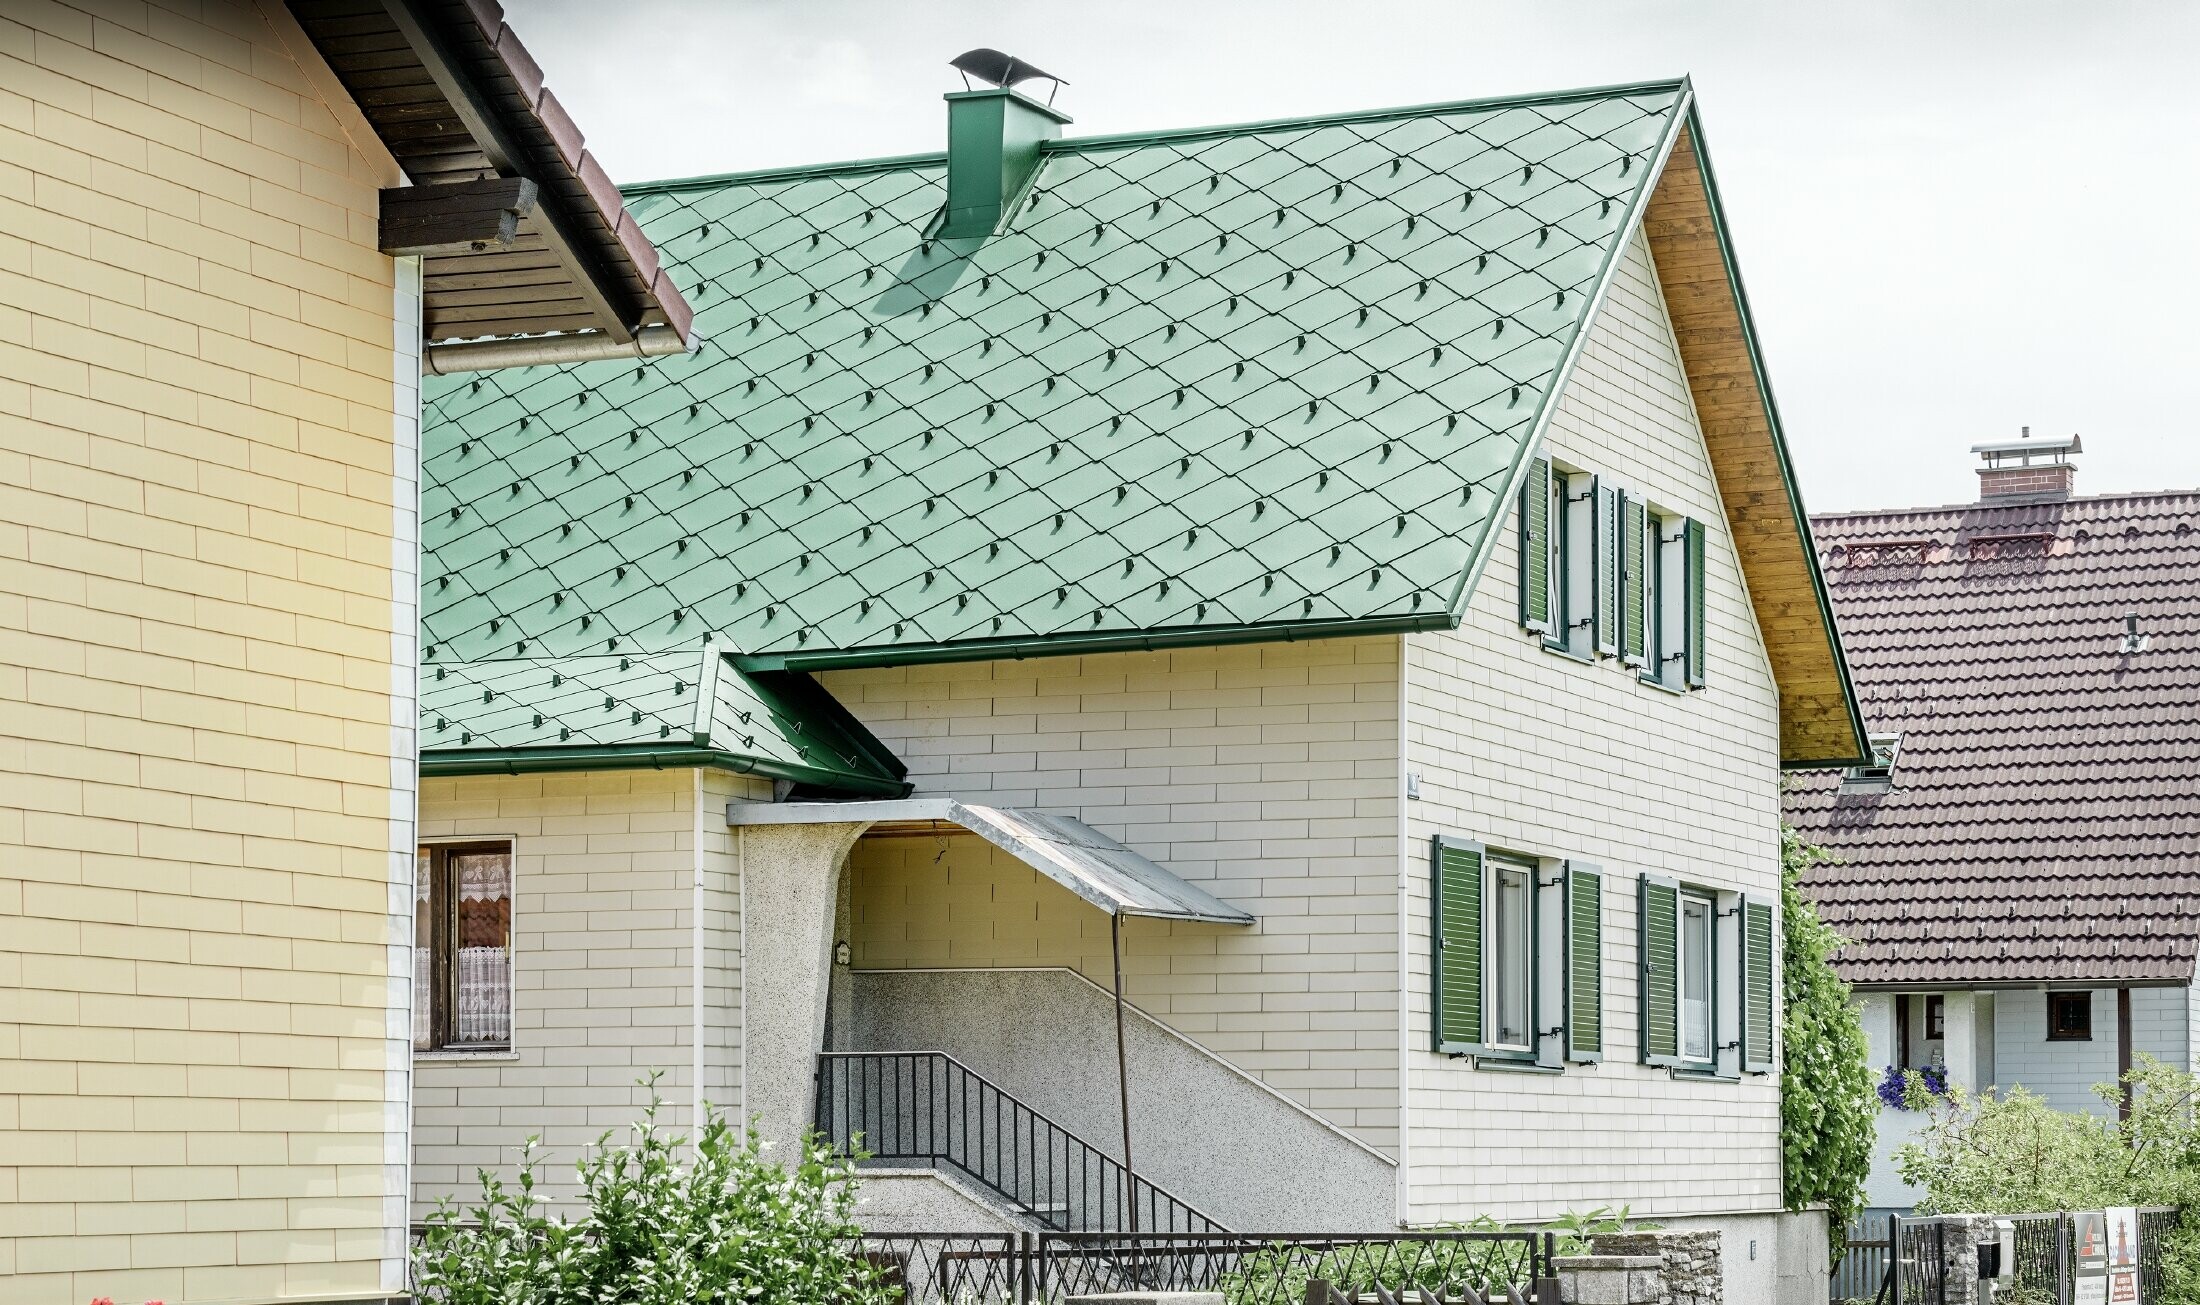 Klassieke alleenstaande woning met zadeldak bedekt met mosgroene aluminium daklosanges, in harmonie met de groene vensterluiken